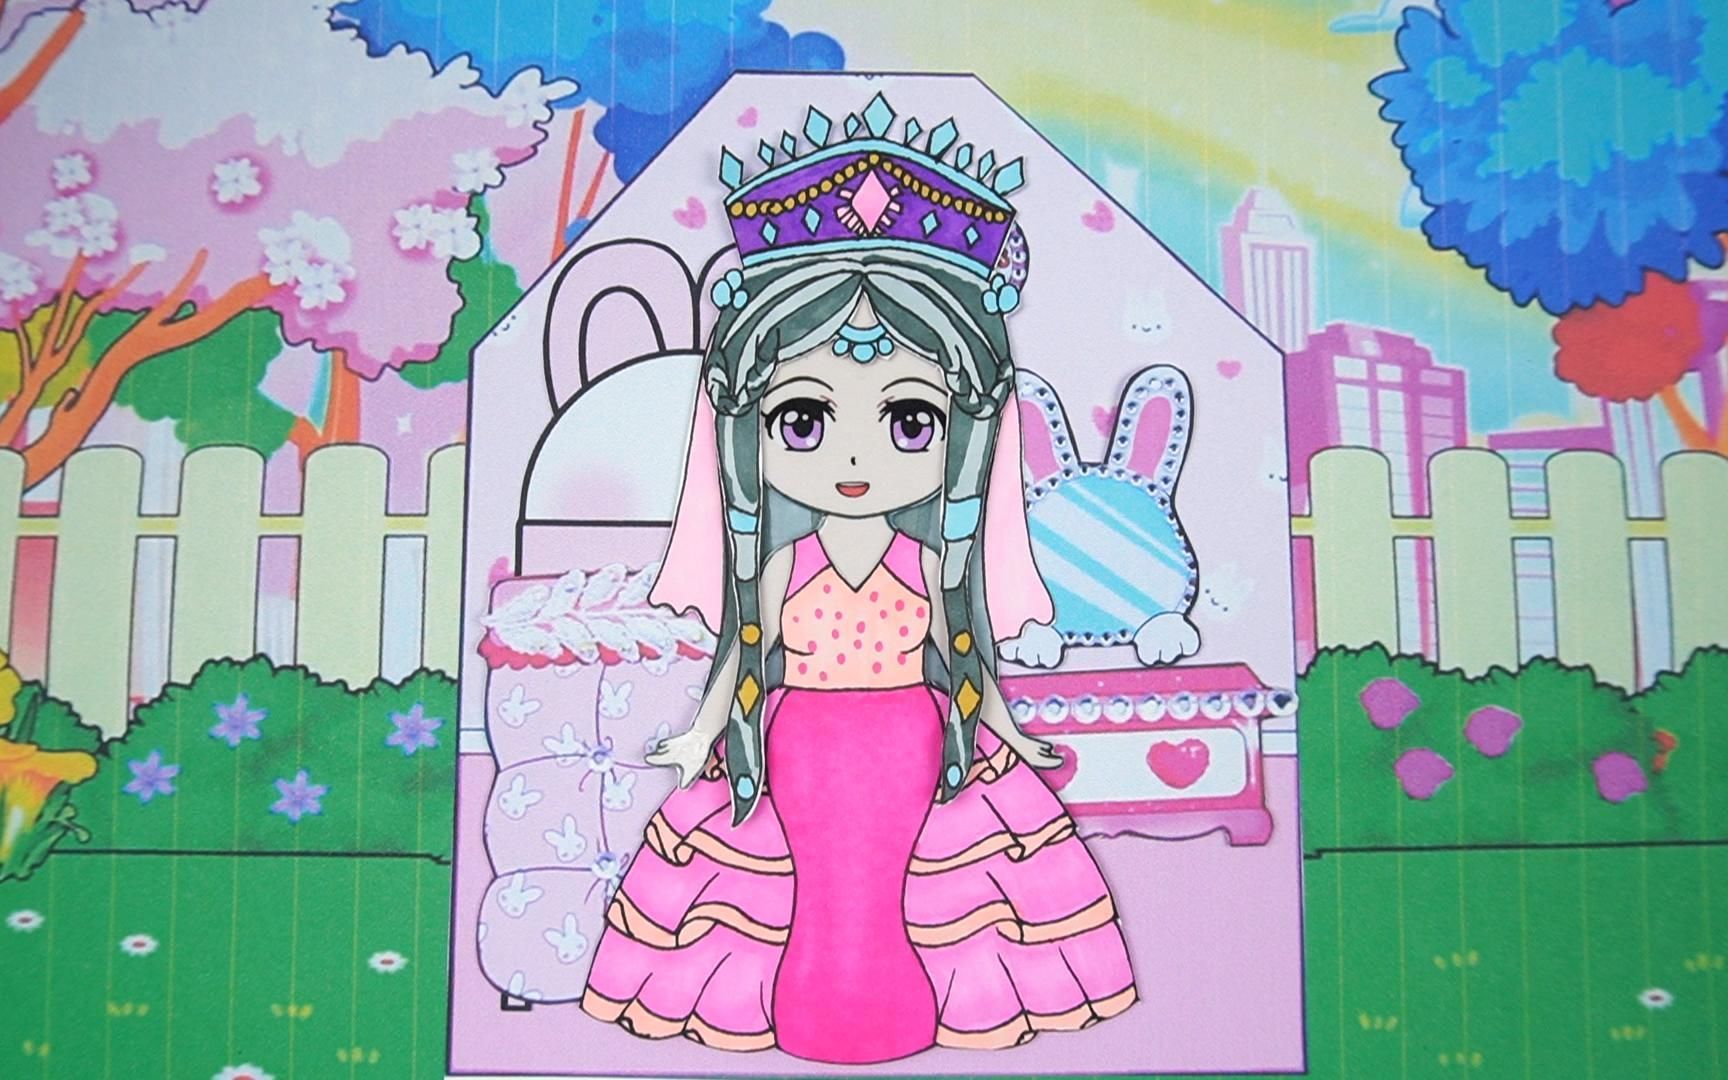 精灵梦叶罗丽纸娃娃,时希公主的粉红兔子房